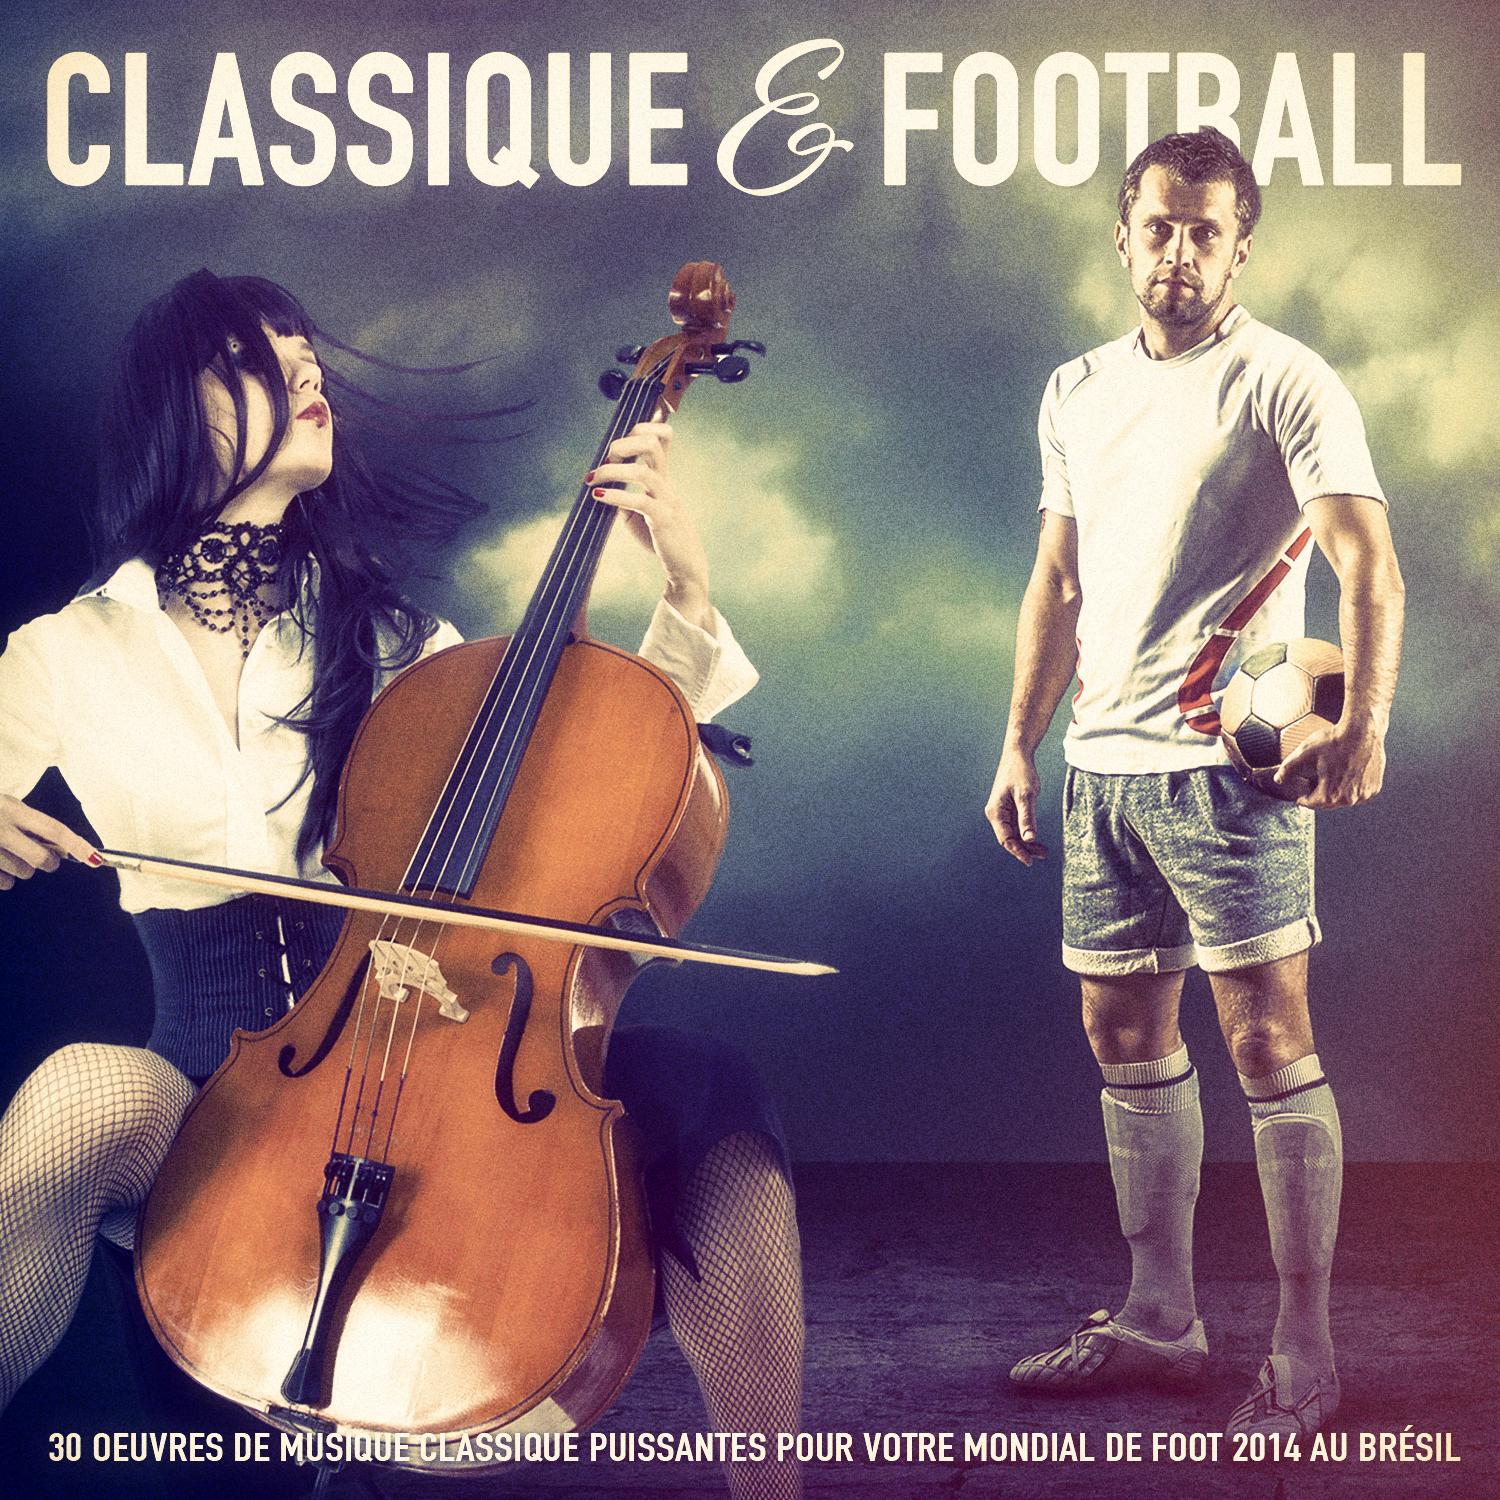 Musique classique & Football: 30 oeuvres de musique classique puissantes pour votre mondial de foot 2014 au Brésil